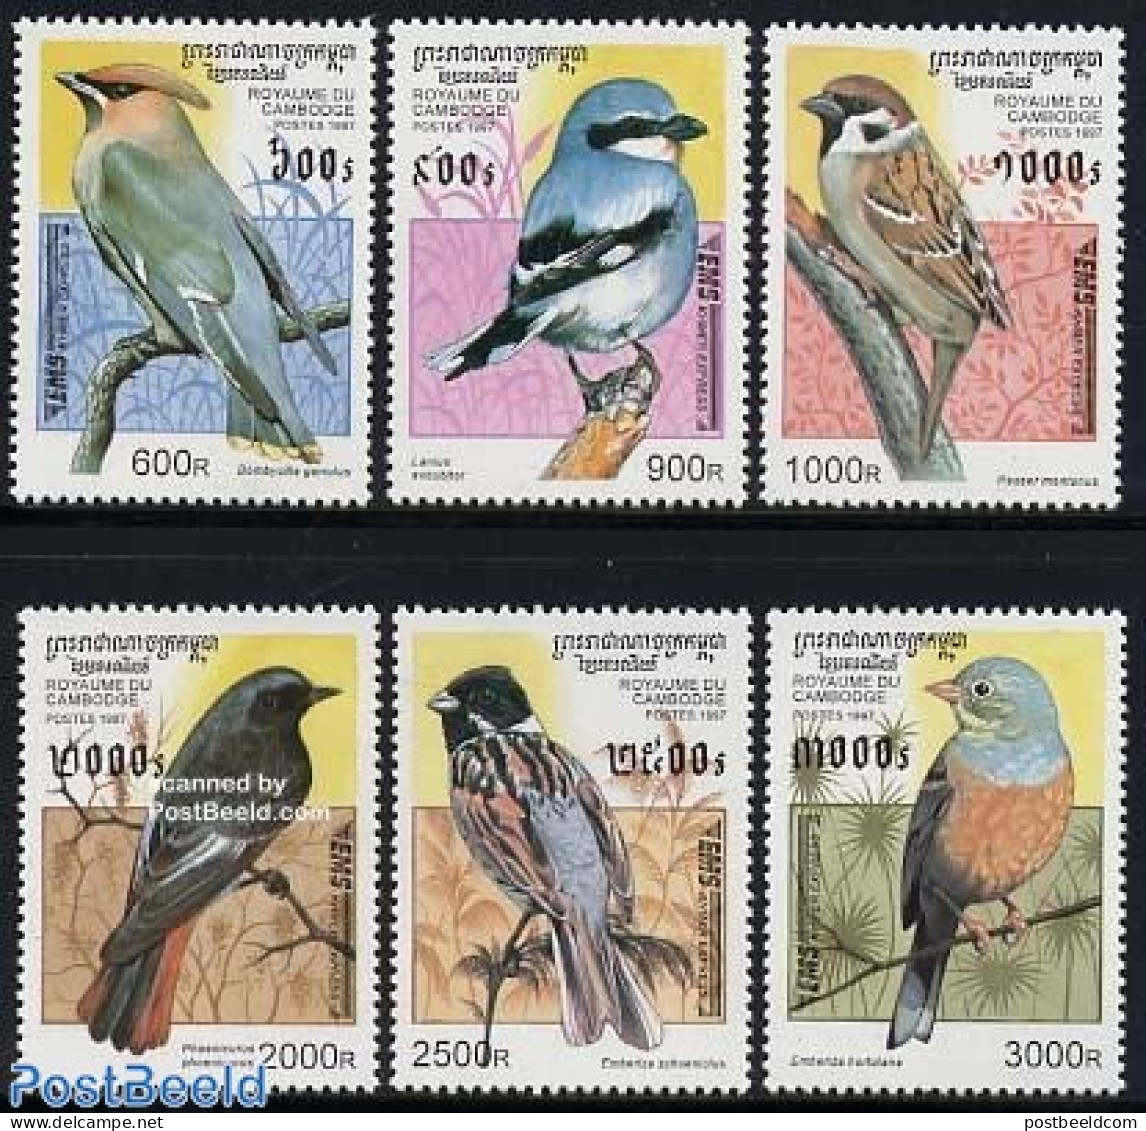 Cambodia 1997 Express Mail, Birds 6v, Mint NH, Nature - Birds - Cambodia